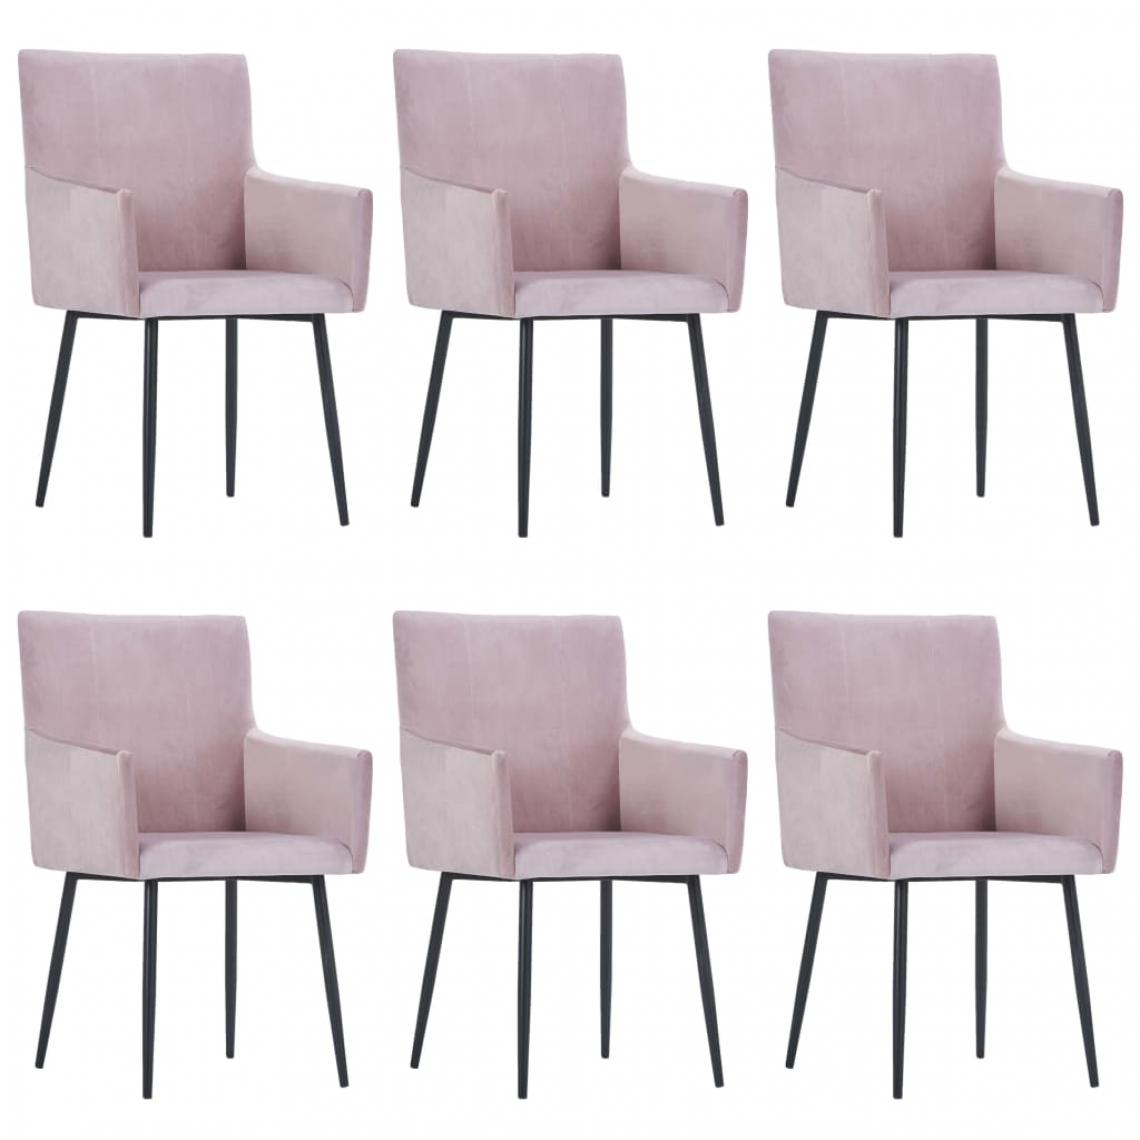 Icaverne - Splendide Fauteuils et chaises edition Nassau Chaises de salle à manger avec accoudoirs 6 pcs Rose Velours - Chaises